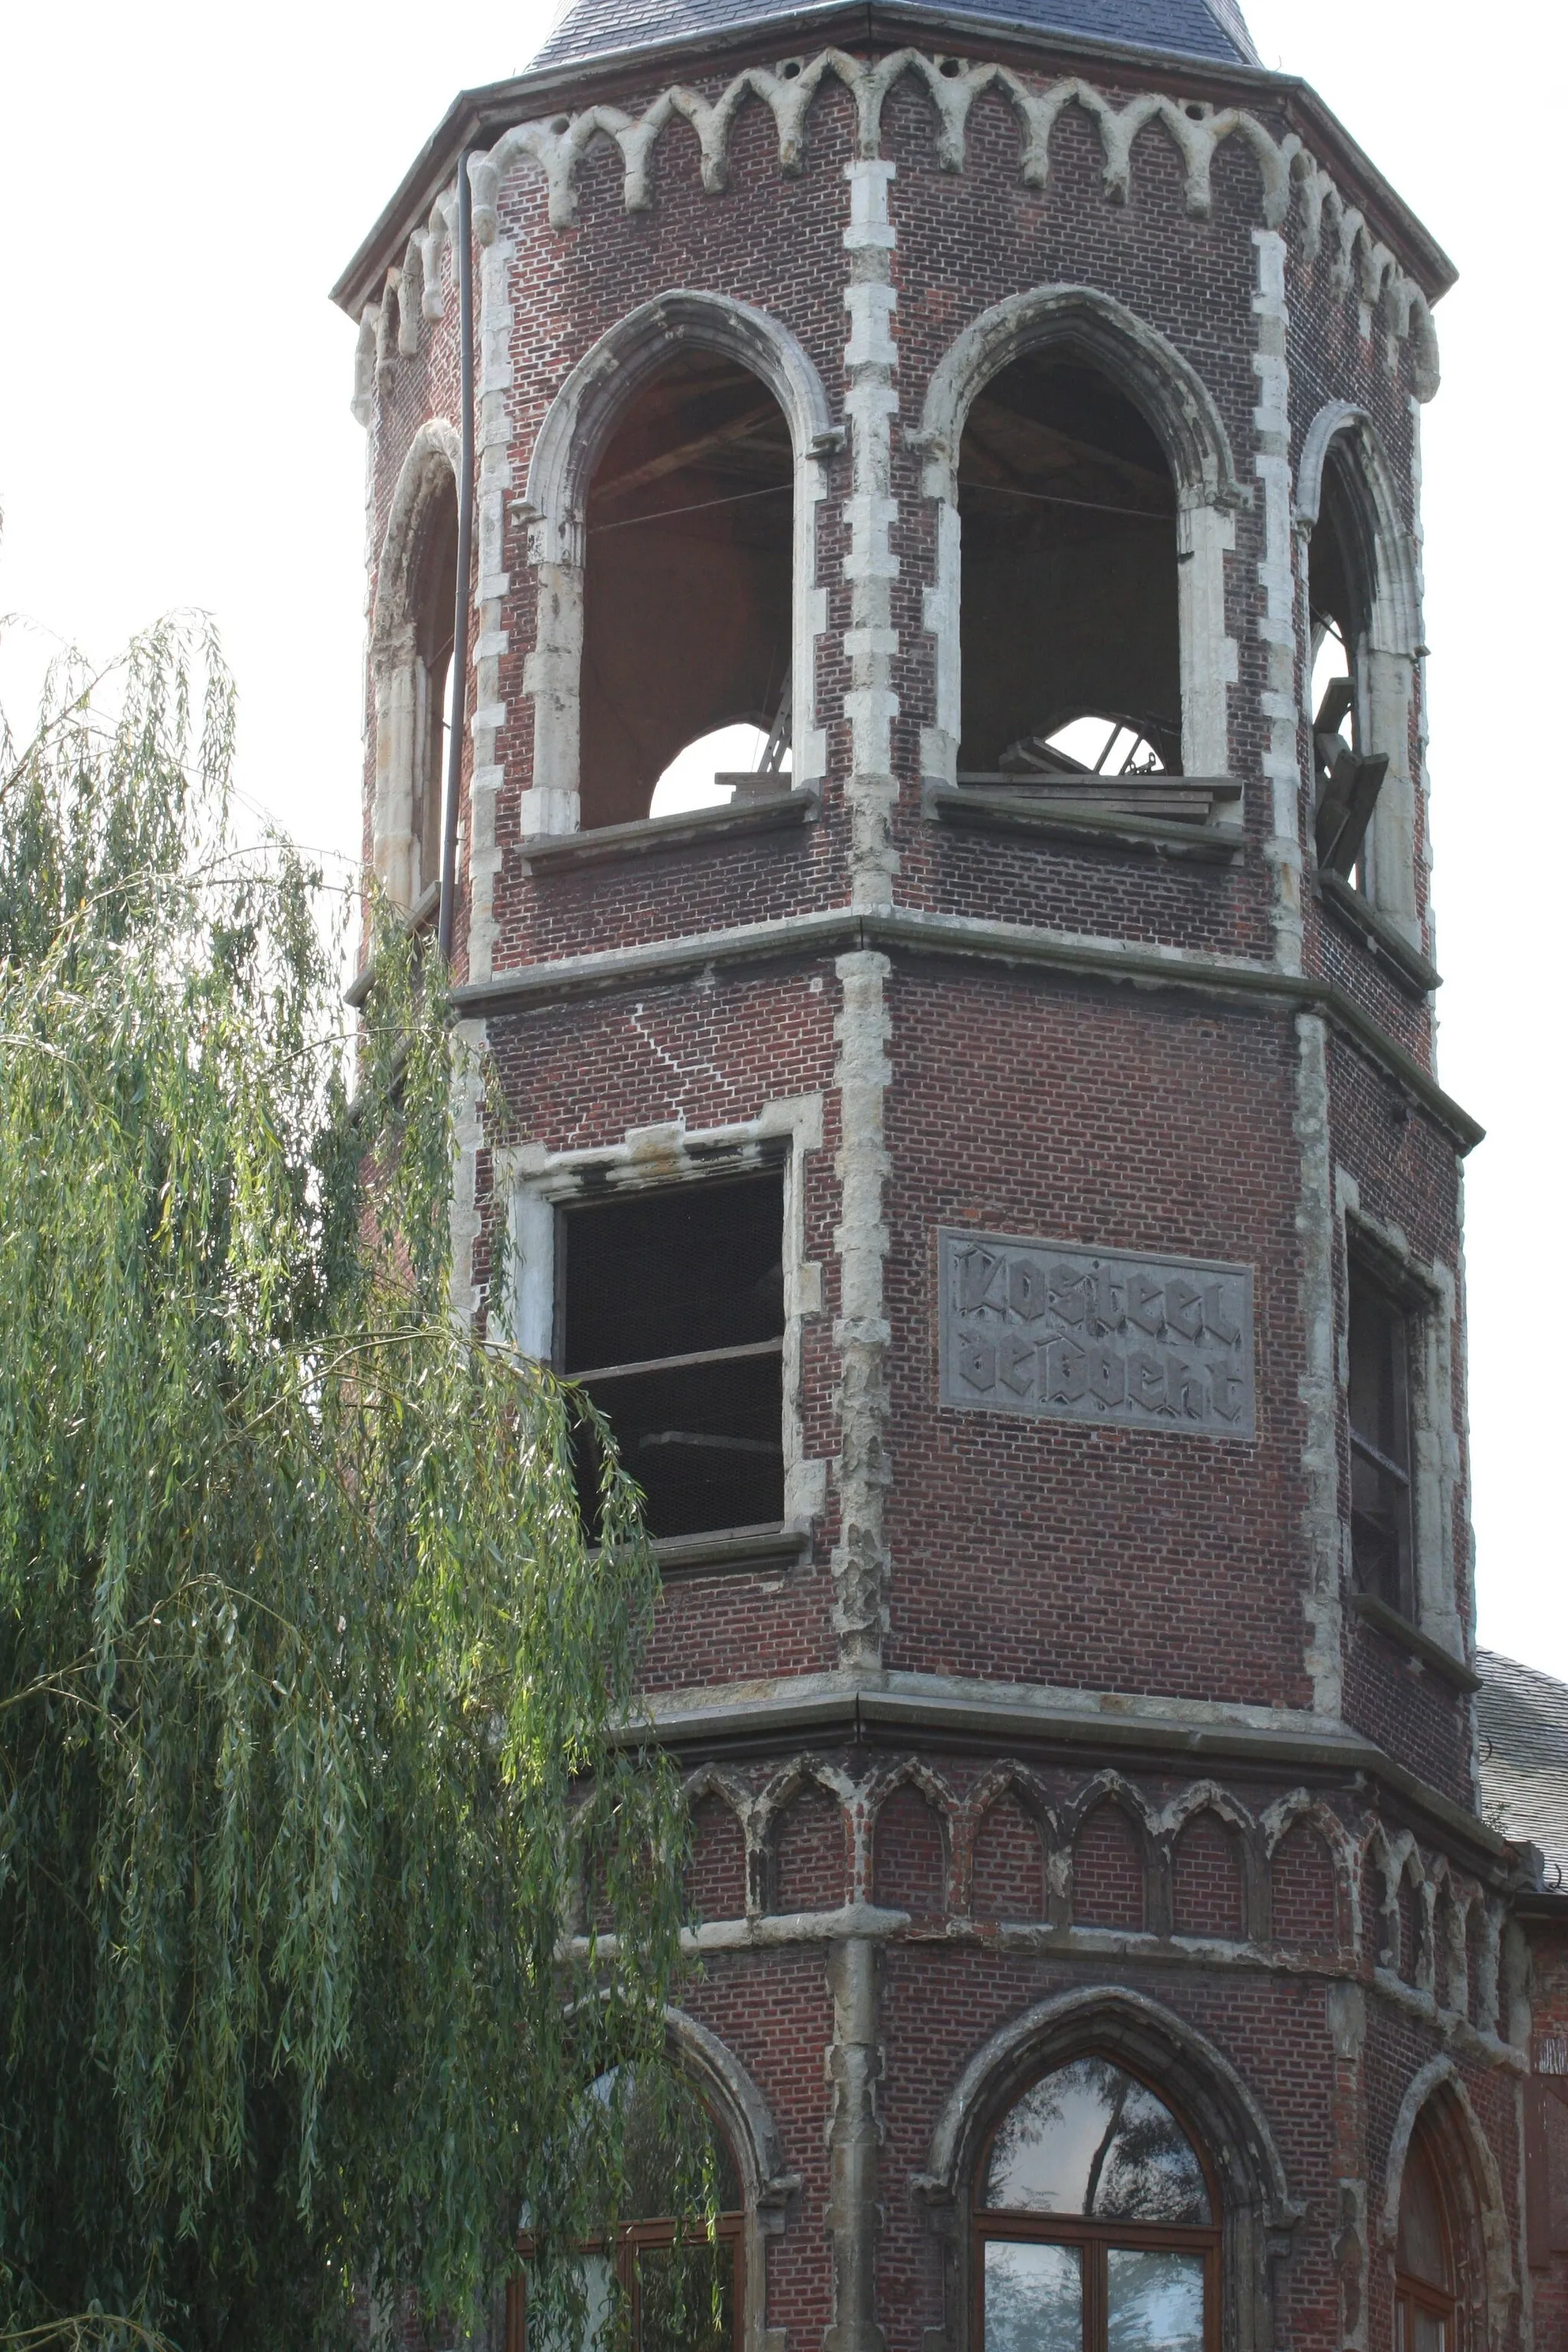 Photo showing: Toren van Kasteel De Bocht gezien vanaf de Rupeldijk (zijde Heindonk)